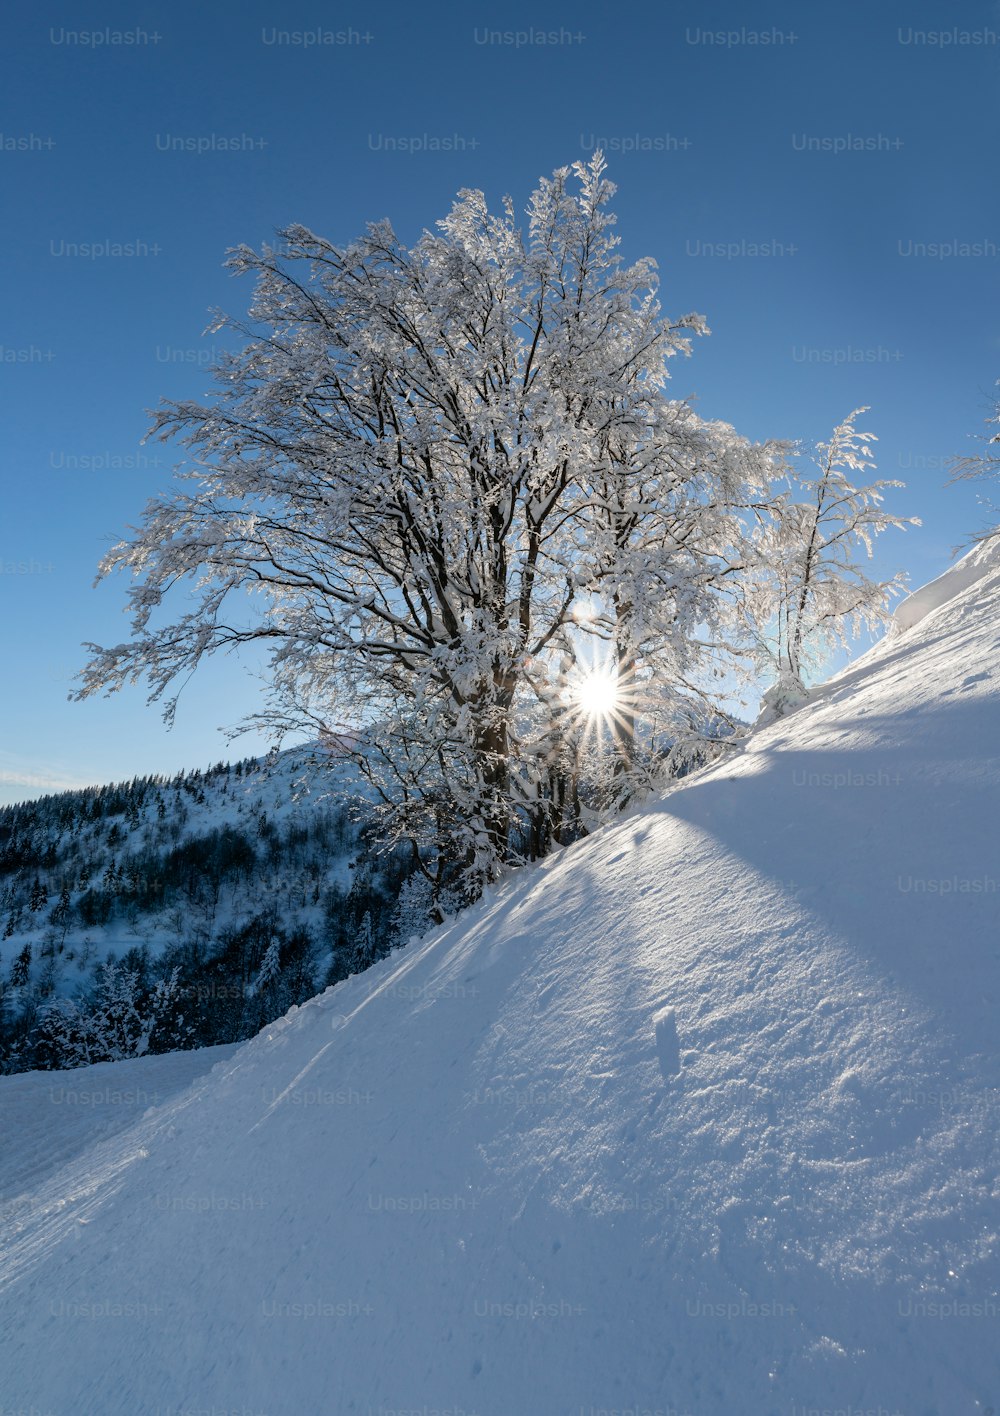 El sol brilla intensamente a través de las ramas de un árbol en la nieve